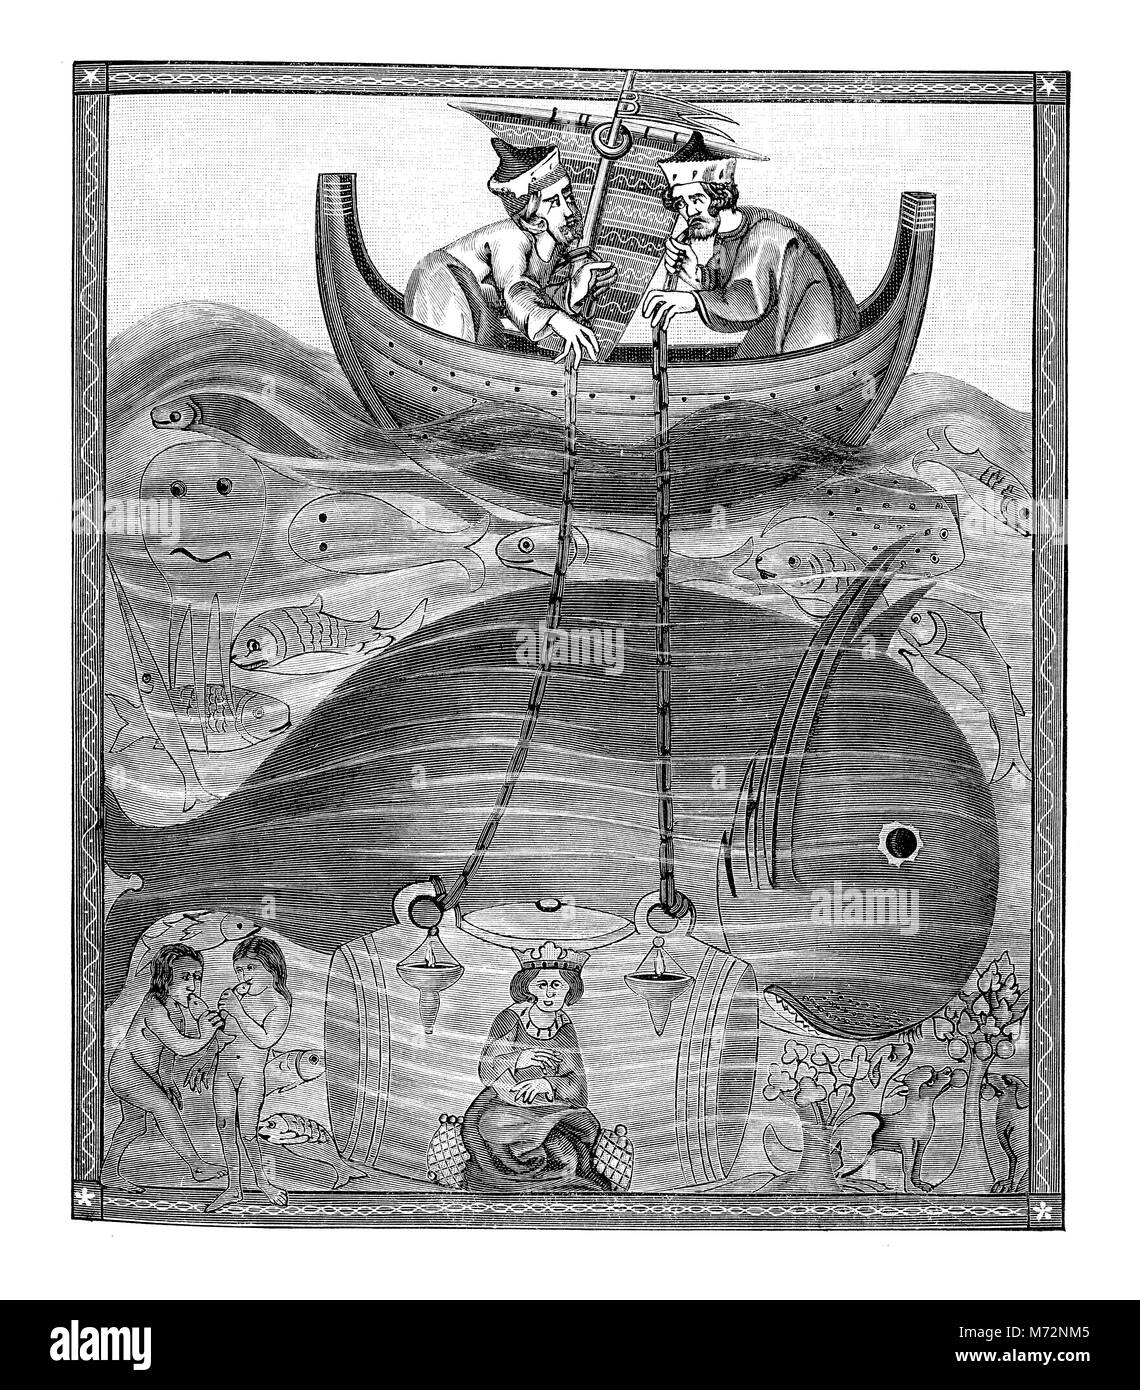 Fantastica rappresentazione medievale di mare acque di profondità, con umana e balena subacquea, XII secolo illustrazione Foto Stock